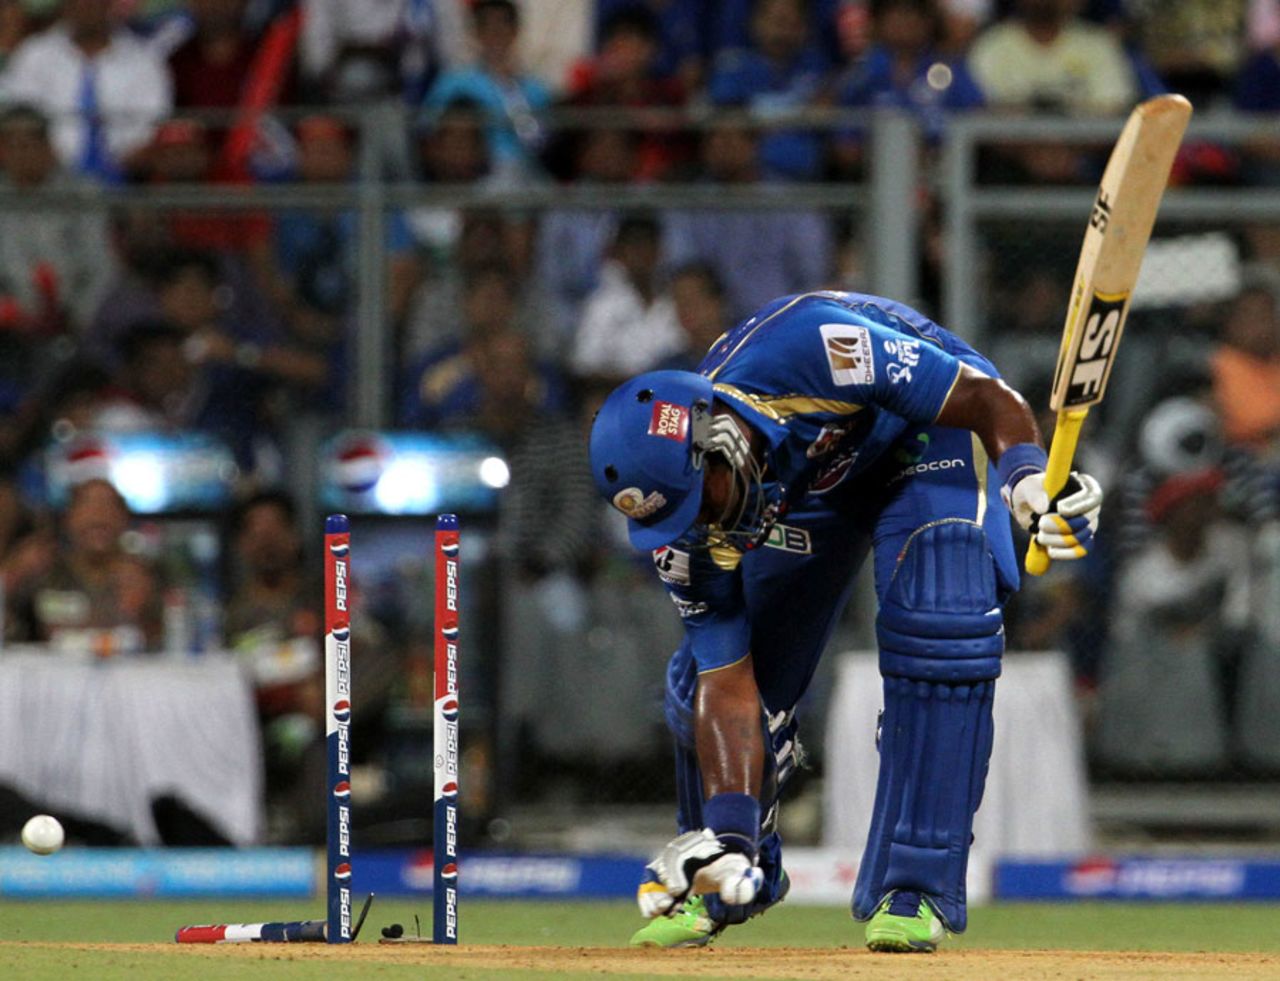 Dwayne Smith was bowled by Ishant Sharma, Mumbai Indians v Sunrisers Hyderabad, IPL 2013, Mumbai, May 13, 2013